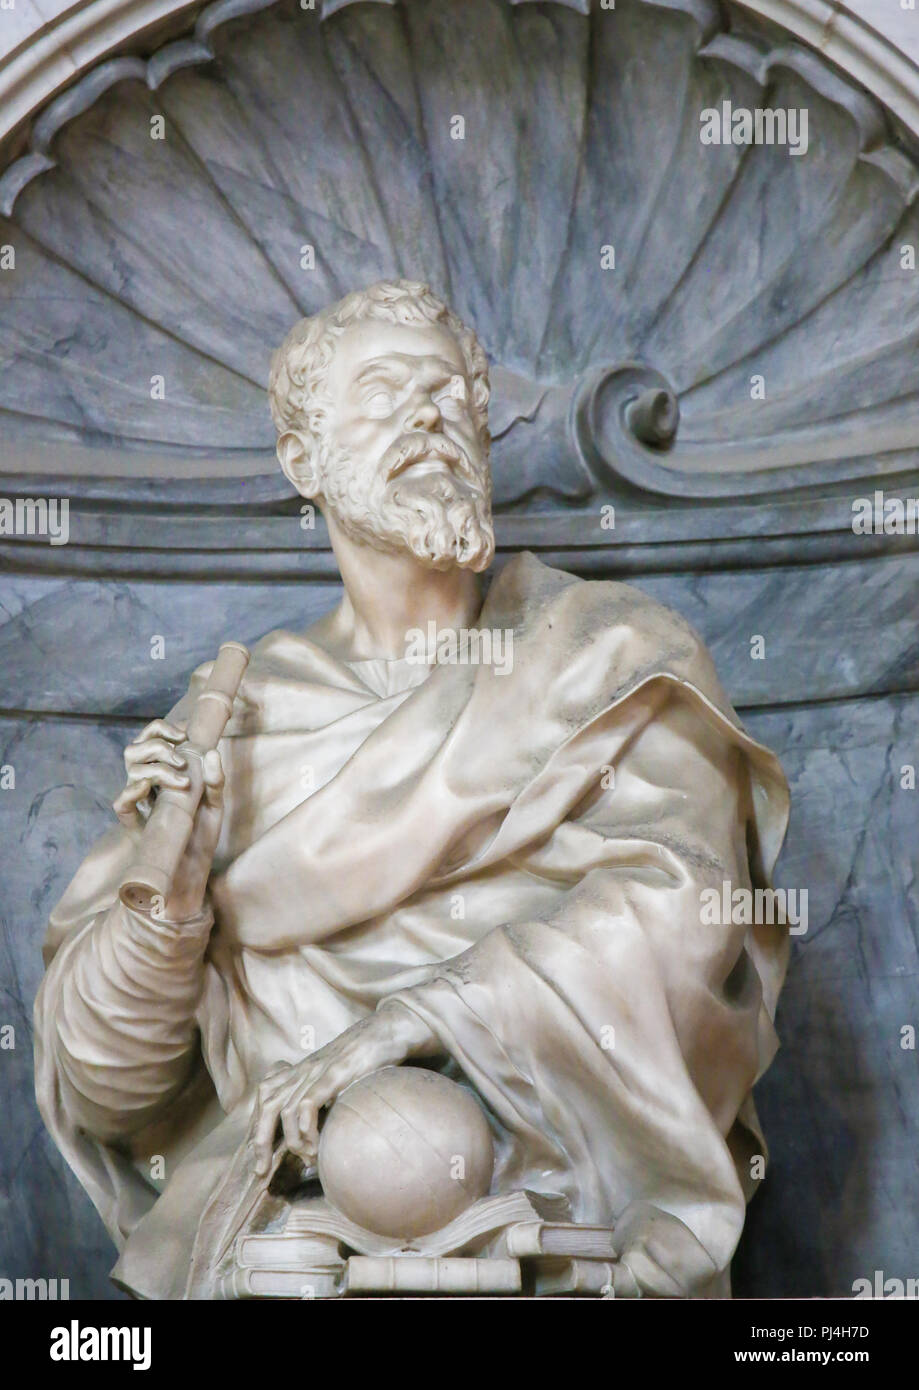 Statua di Galileo Galilei presso la sua tomba nella Basilica di Santa Croce, Firenze, Italia. Foto Stock